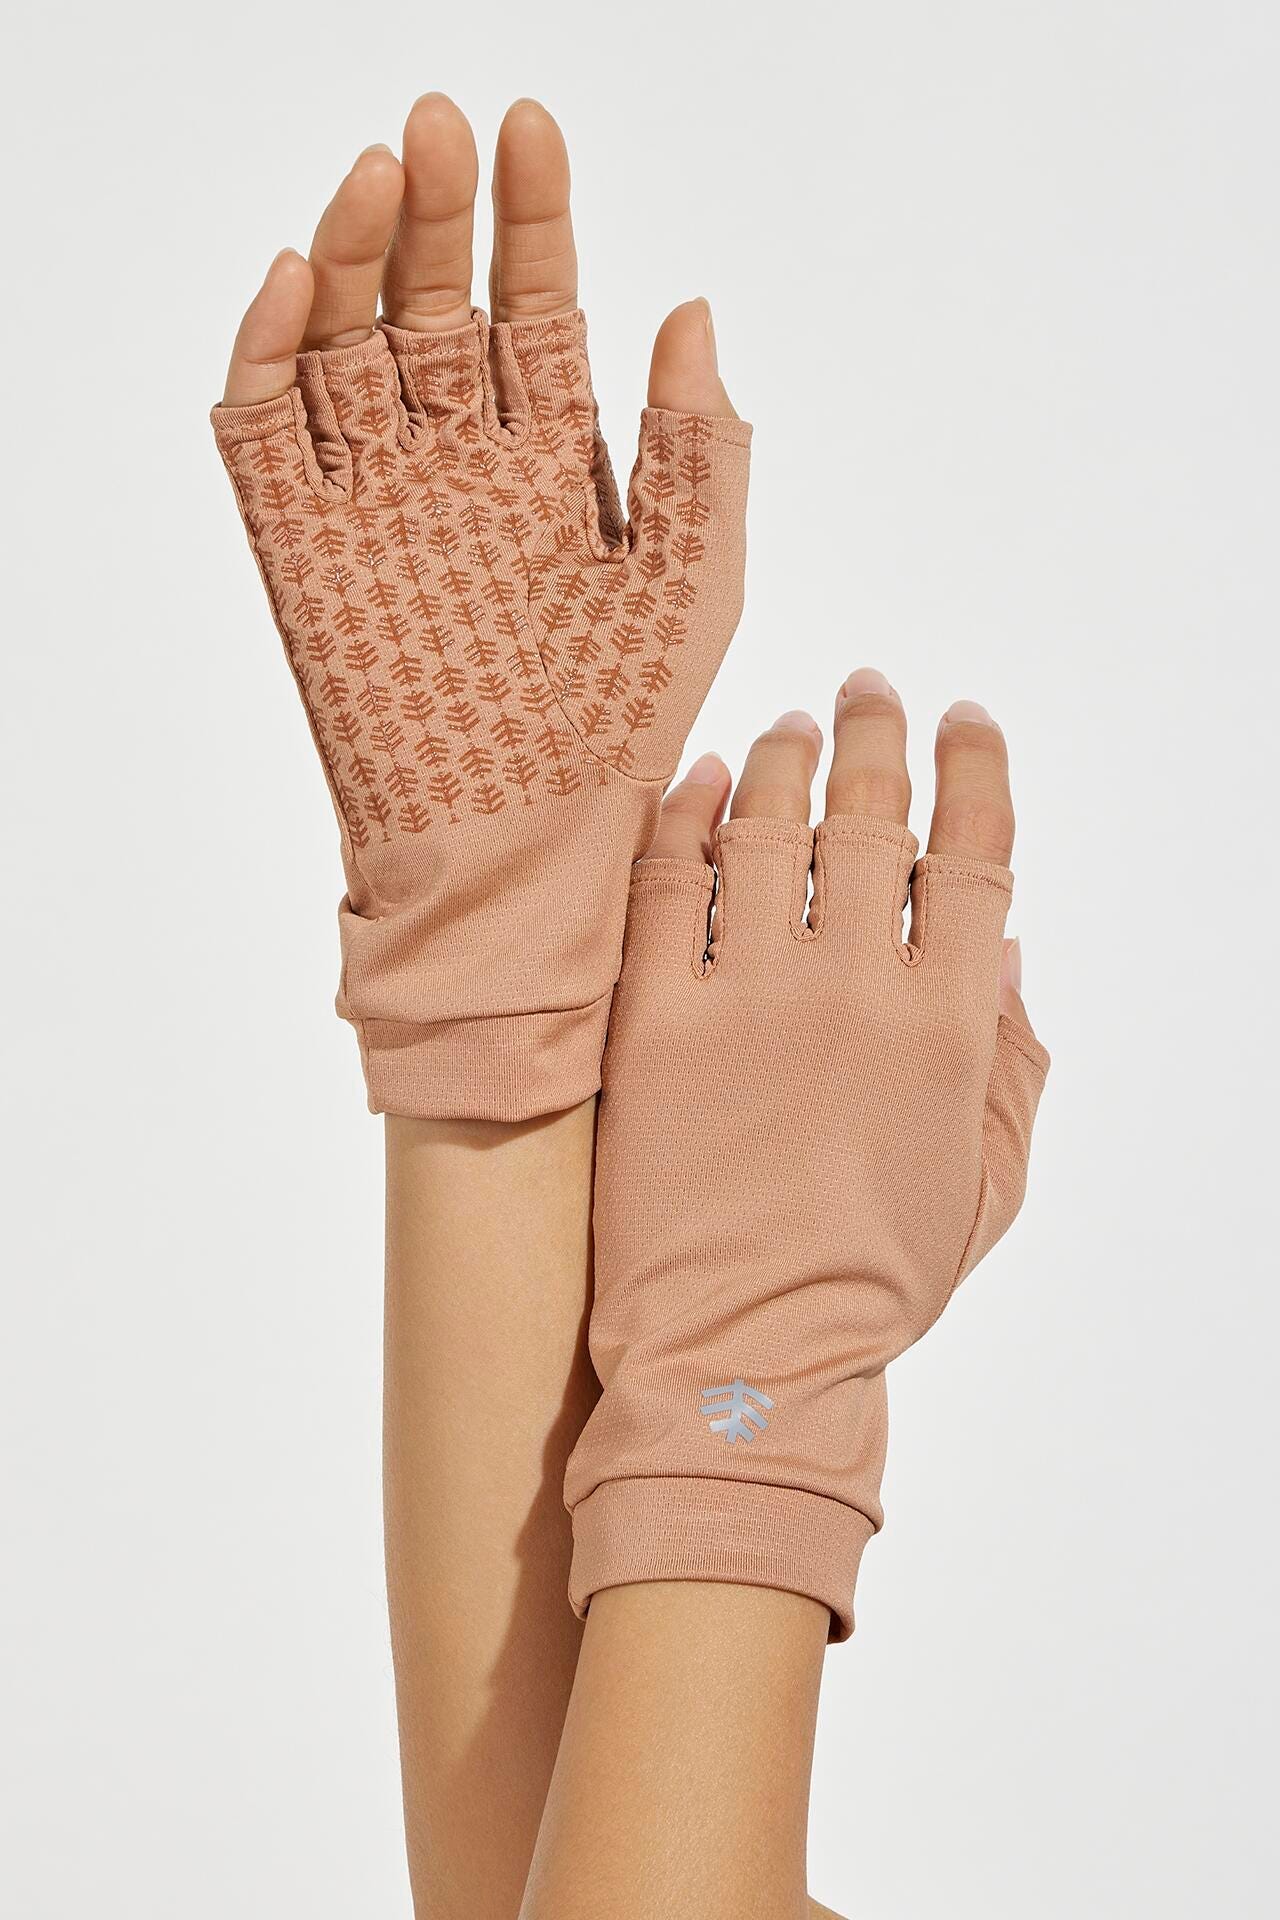 Ouray UV Fingerless Sun Gloves UPF 50+ - Coolibar Antique Tea / S